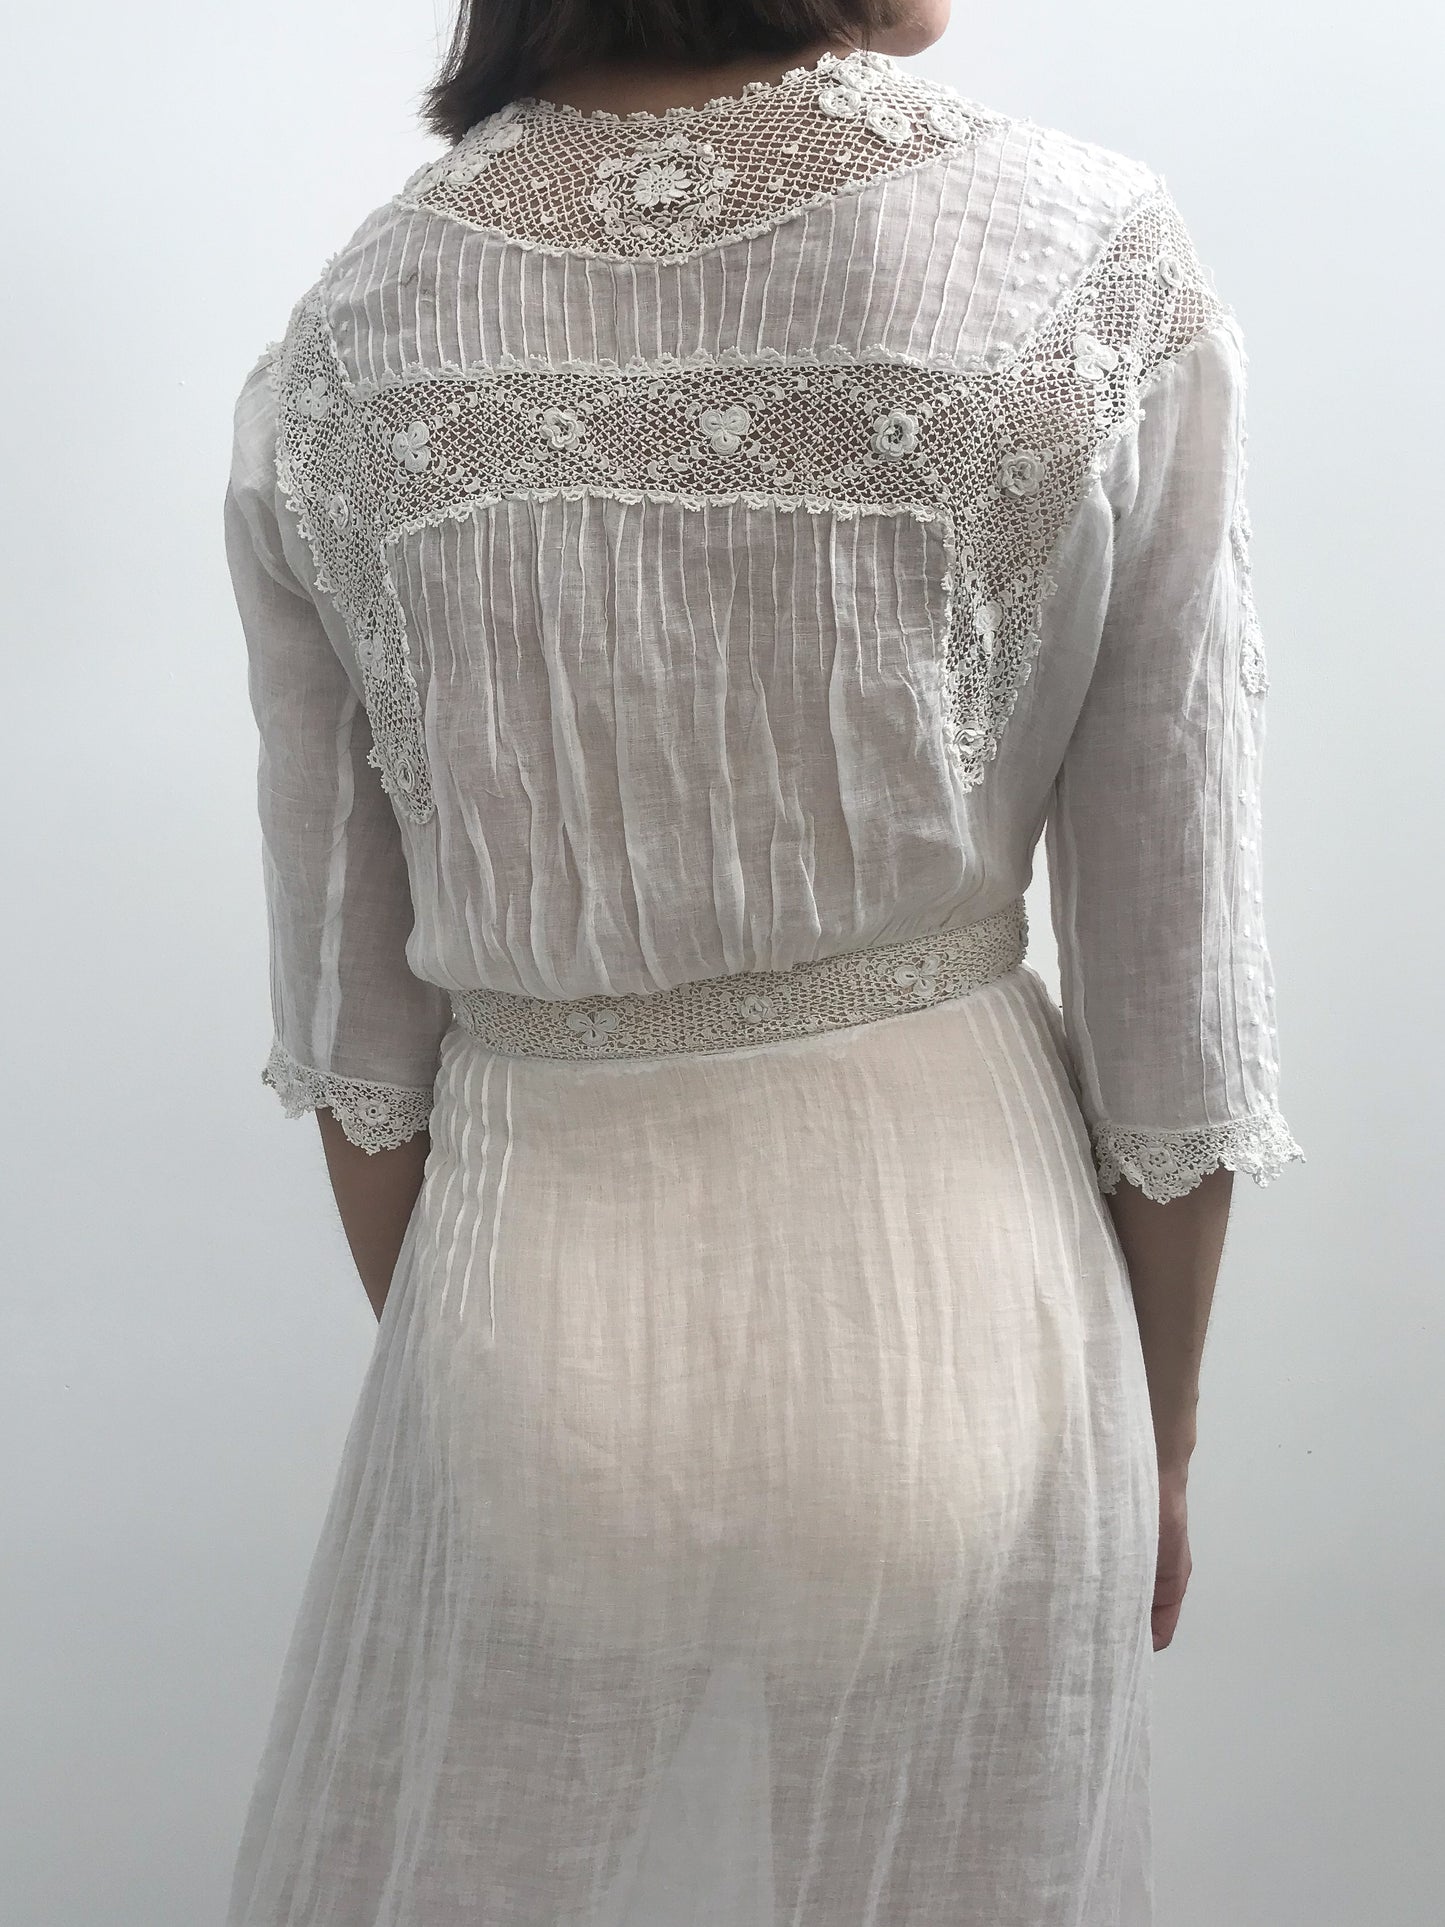 Antique Crochet Detail Cotton Lawn Dress